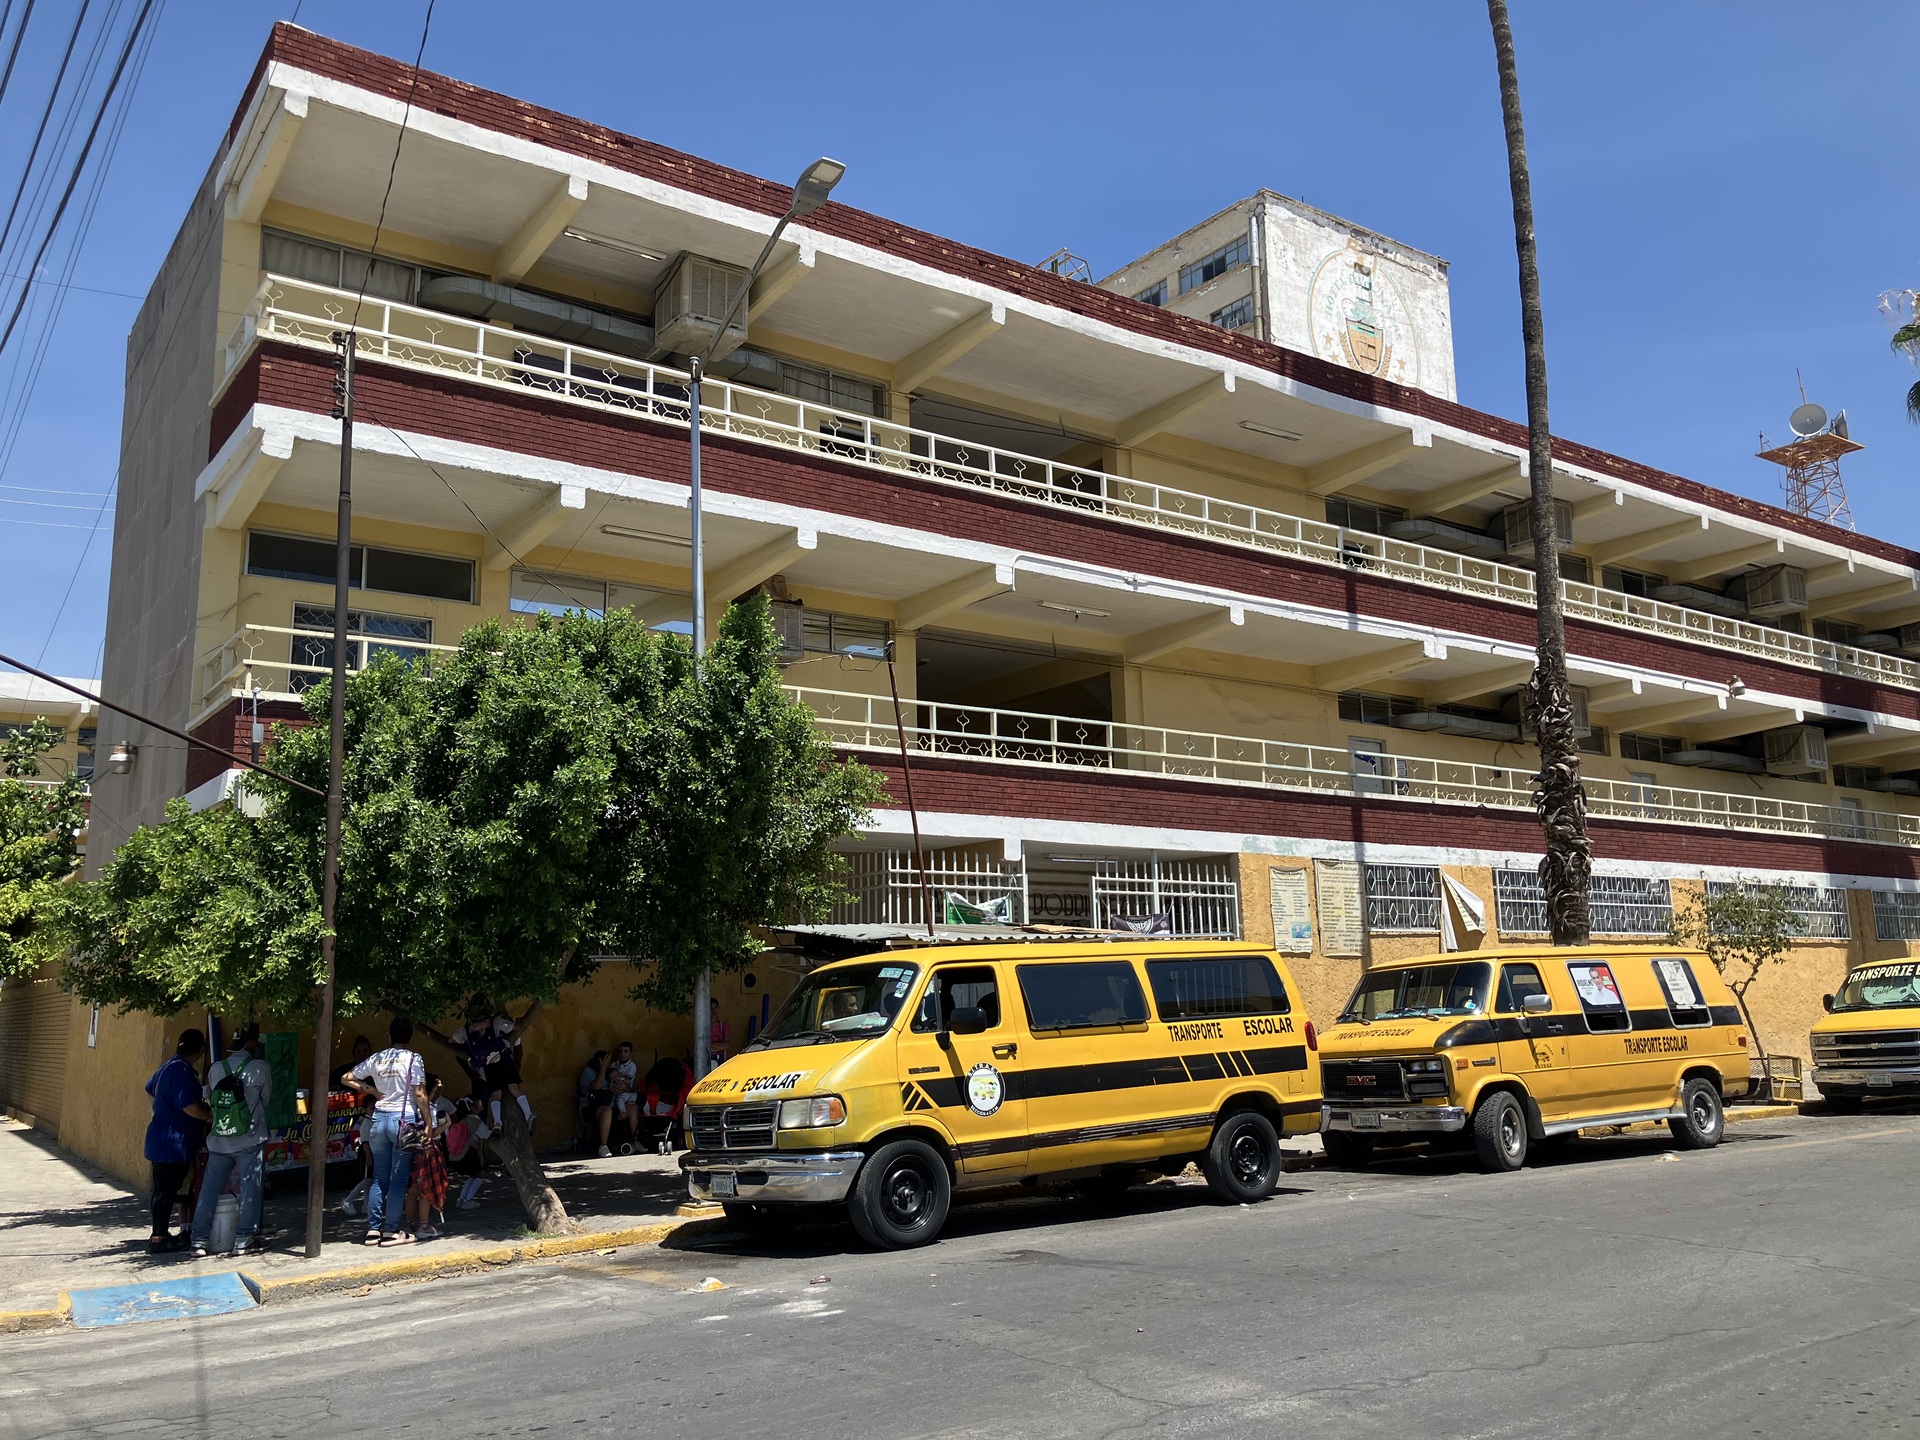  La escuela Alfonso Rodríguez, ubicada en la calle Falcón de Torreón, recibió 600 mil pesos. (Angélica Sandoval)
